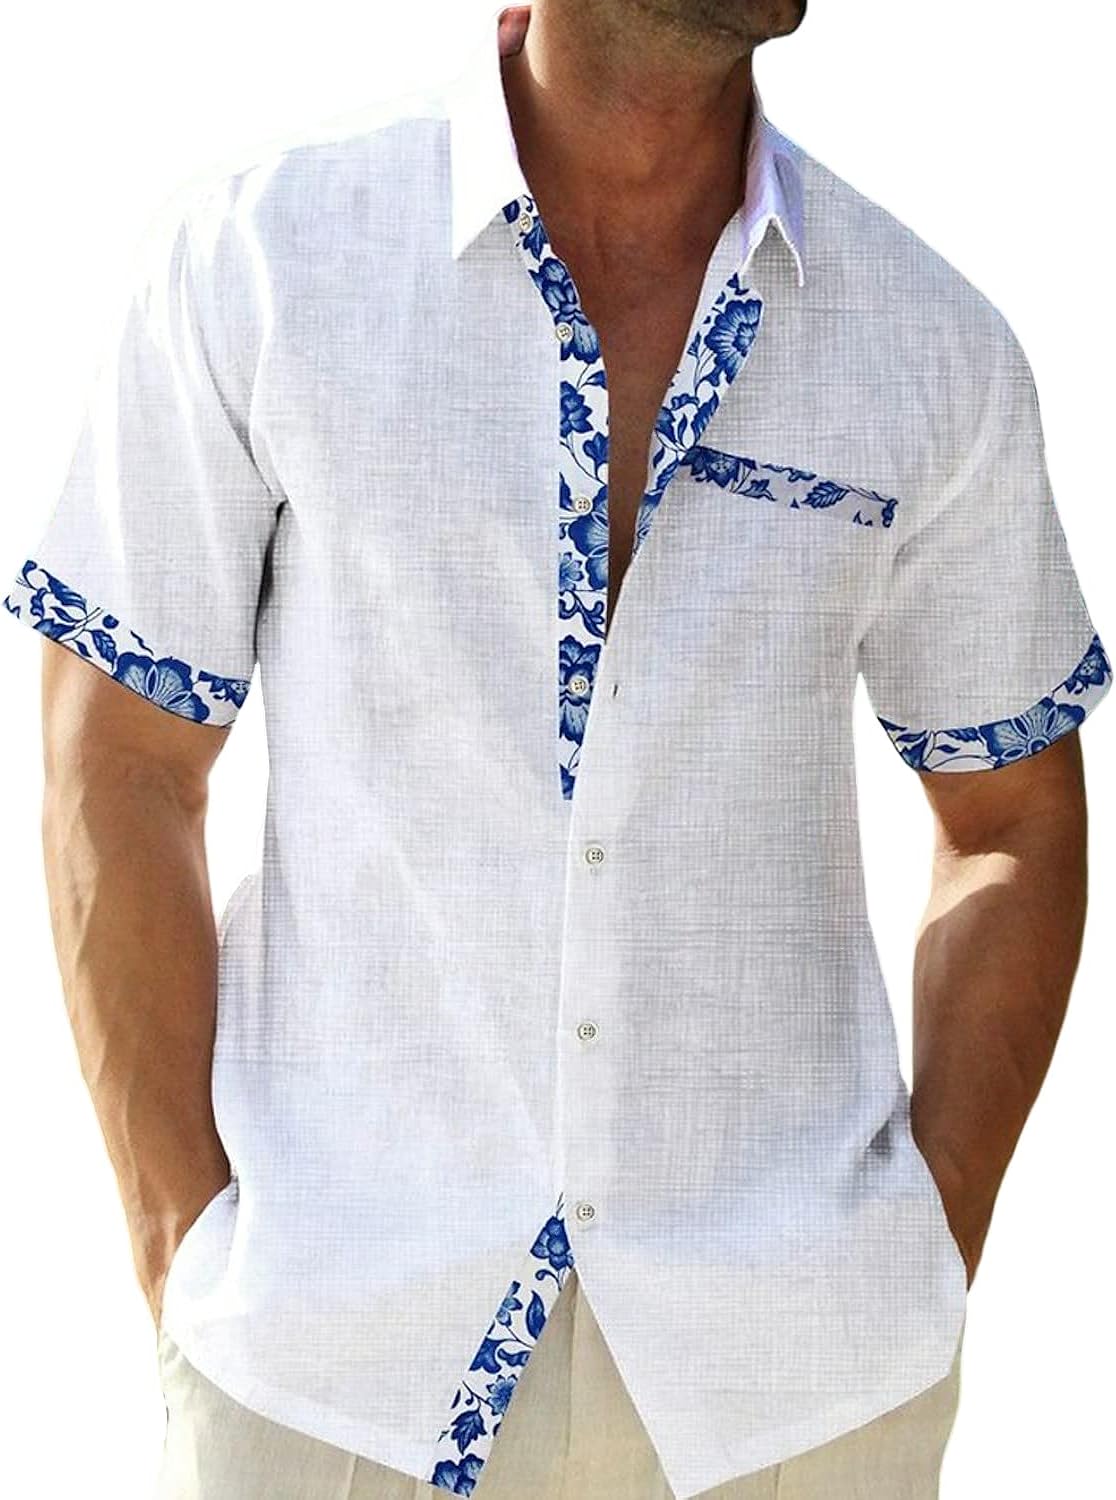 QIVICIMA Men's Hawaiian Shirt Linen Shirt Sleeve White Pink Sky Blue